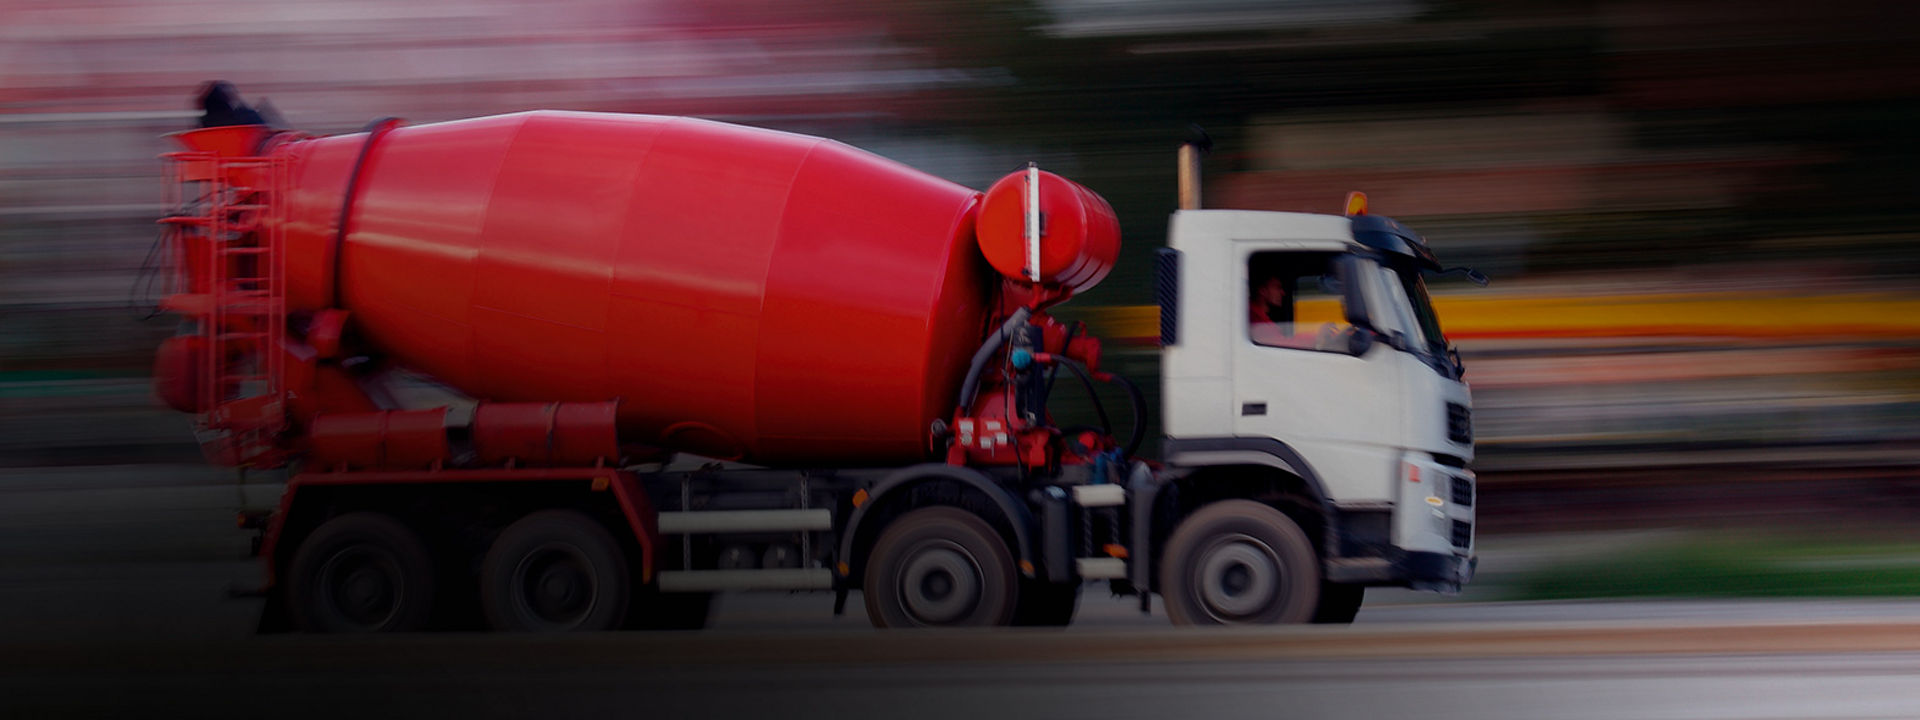 Dieses Bild zeigt einen Zement-Lkw mit Bridgestone On/Off-Reifen, der auf einer Autobahn zu einer Baustelle fährt.